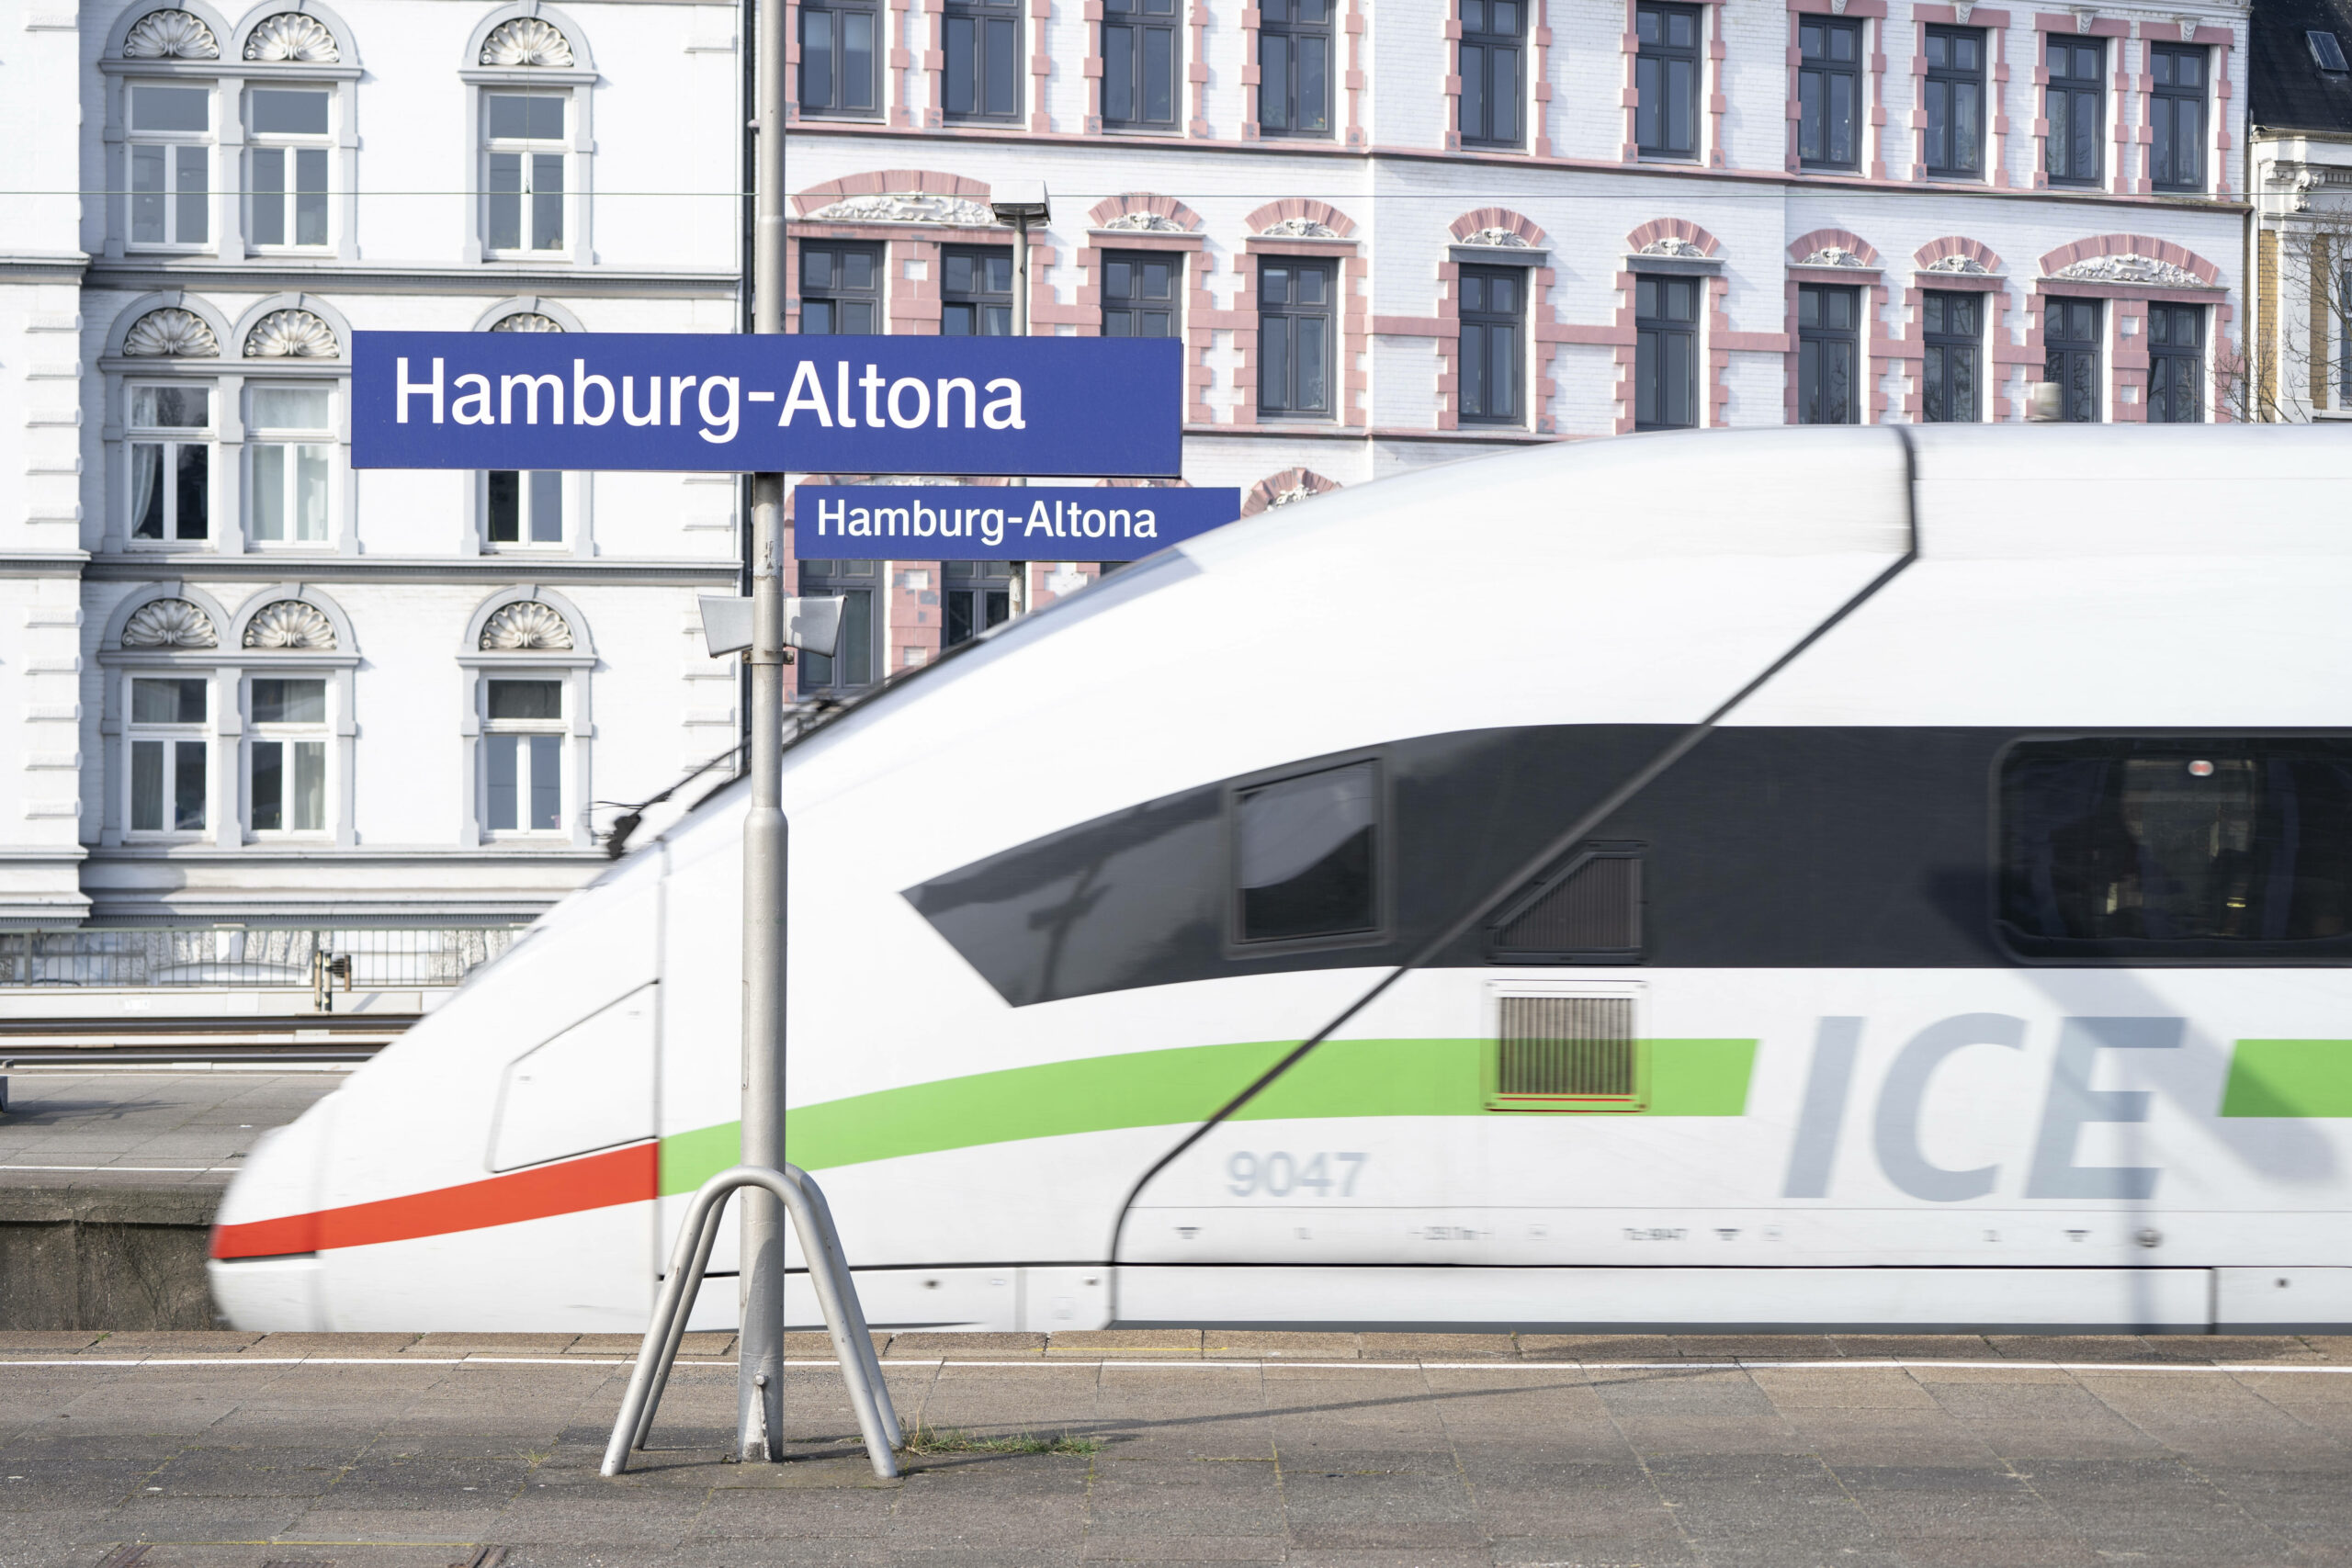 Über Pfingsten und Christi Himmelfahrt seetzt die Deutsche Bahn aufgrund der hohen Nachfrage Sonderzüge ein. (Symbolbild)